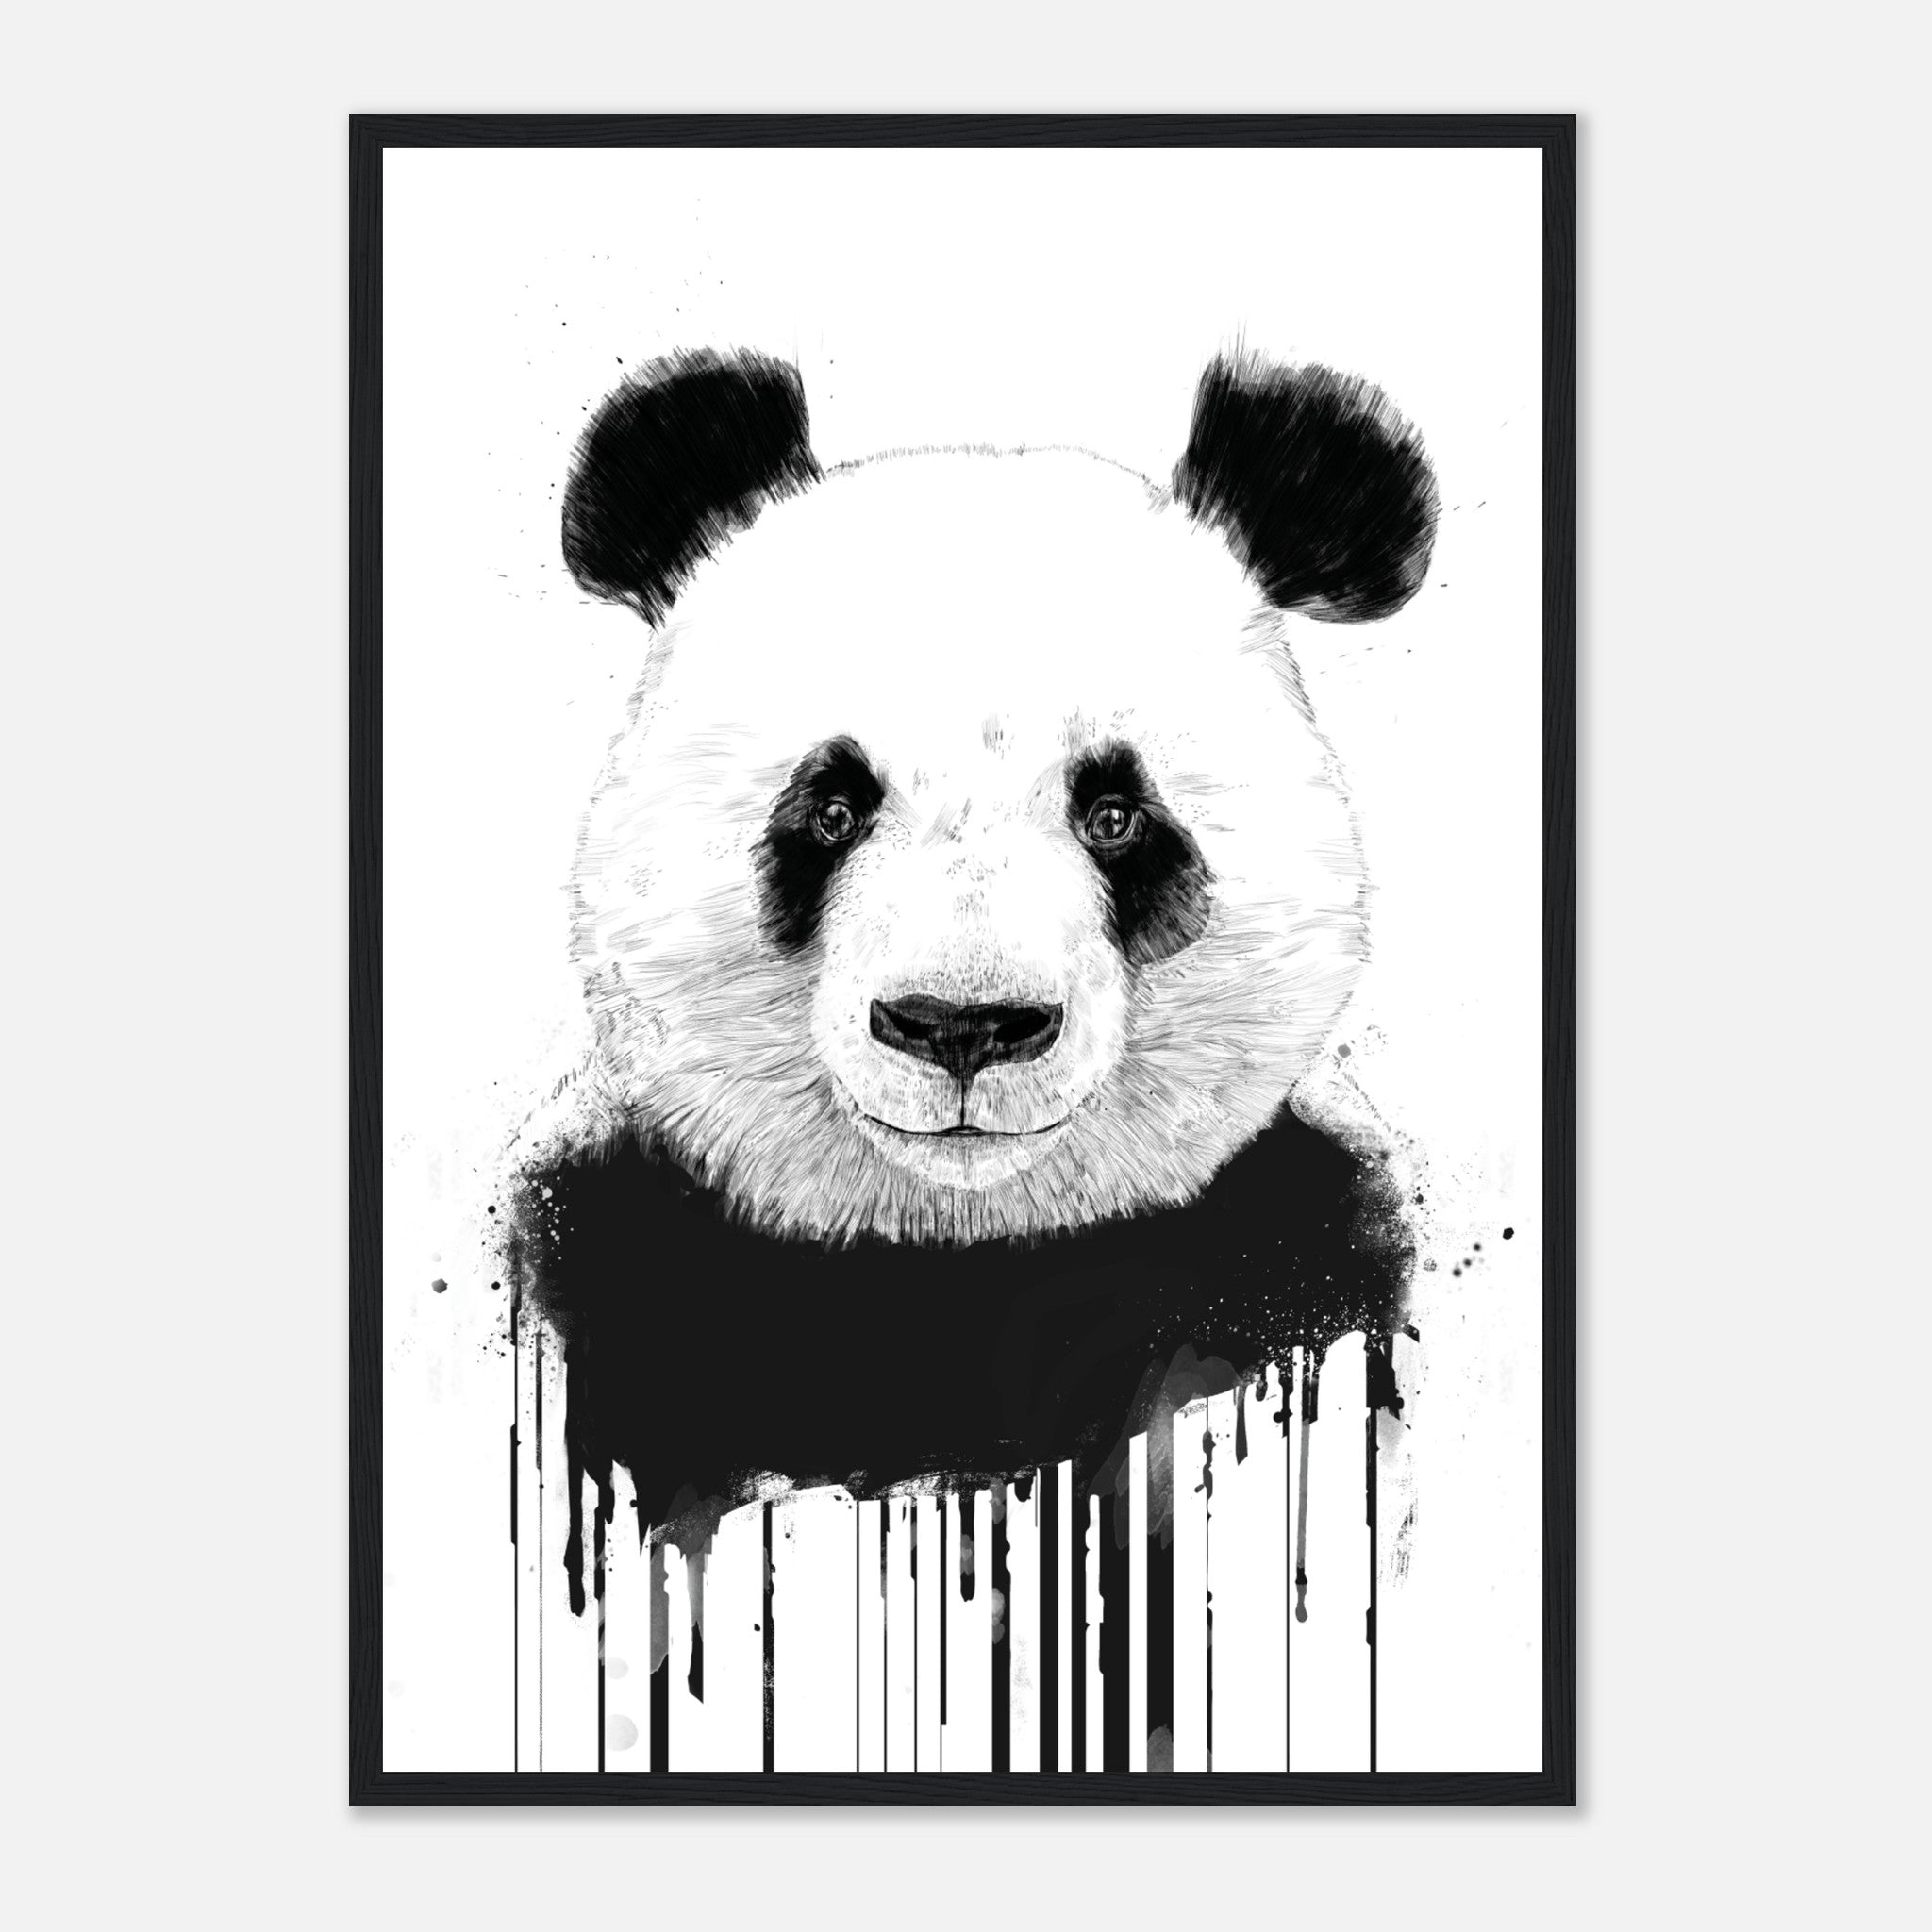 Graffiti Panda Poster